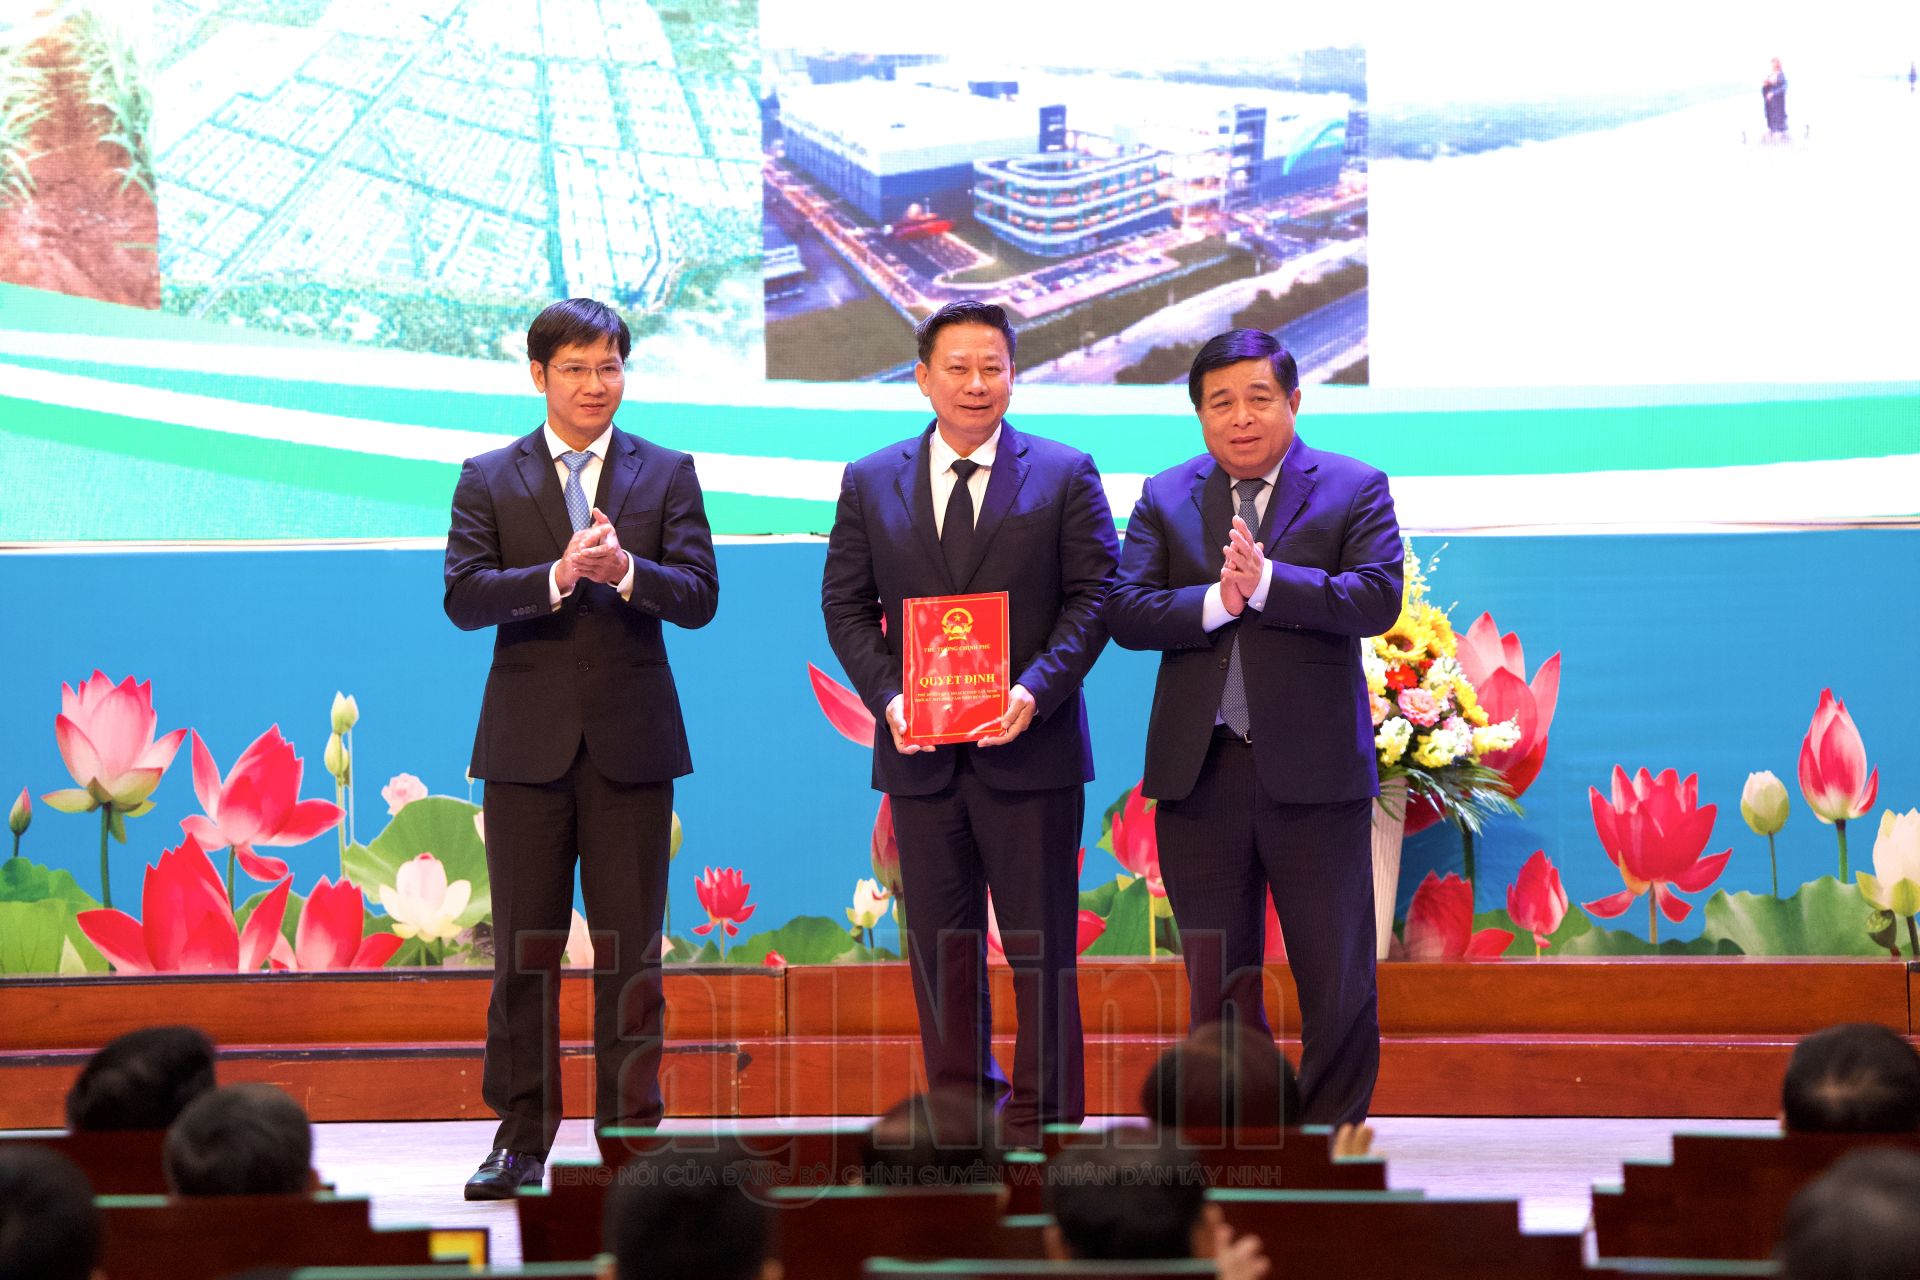 Bộ trưởng Bộ Kế hoạch và Đầu tư Nguyễn Chí Dũng trao Quyết định của Thủ tướng Chính phủ phê duyệt quy hoạch tỉnh Tây Ninh thời kỳ 2021-2030, tầm nhìn đến năm 2050 cho lãnh đạo tỉnh Tây Ninh.